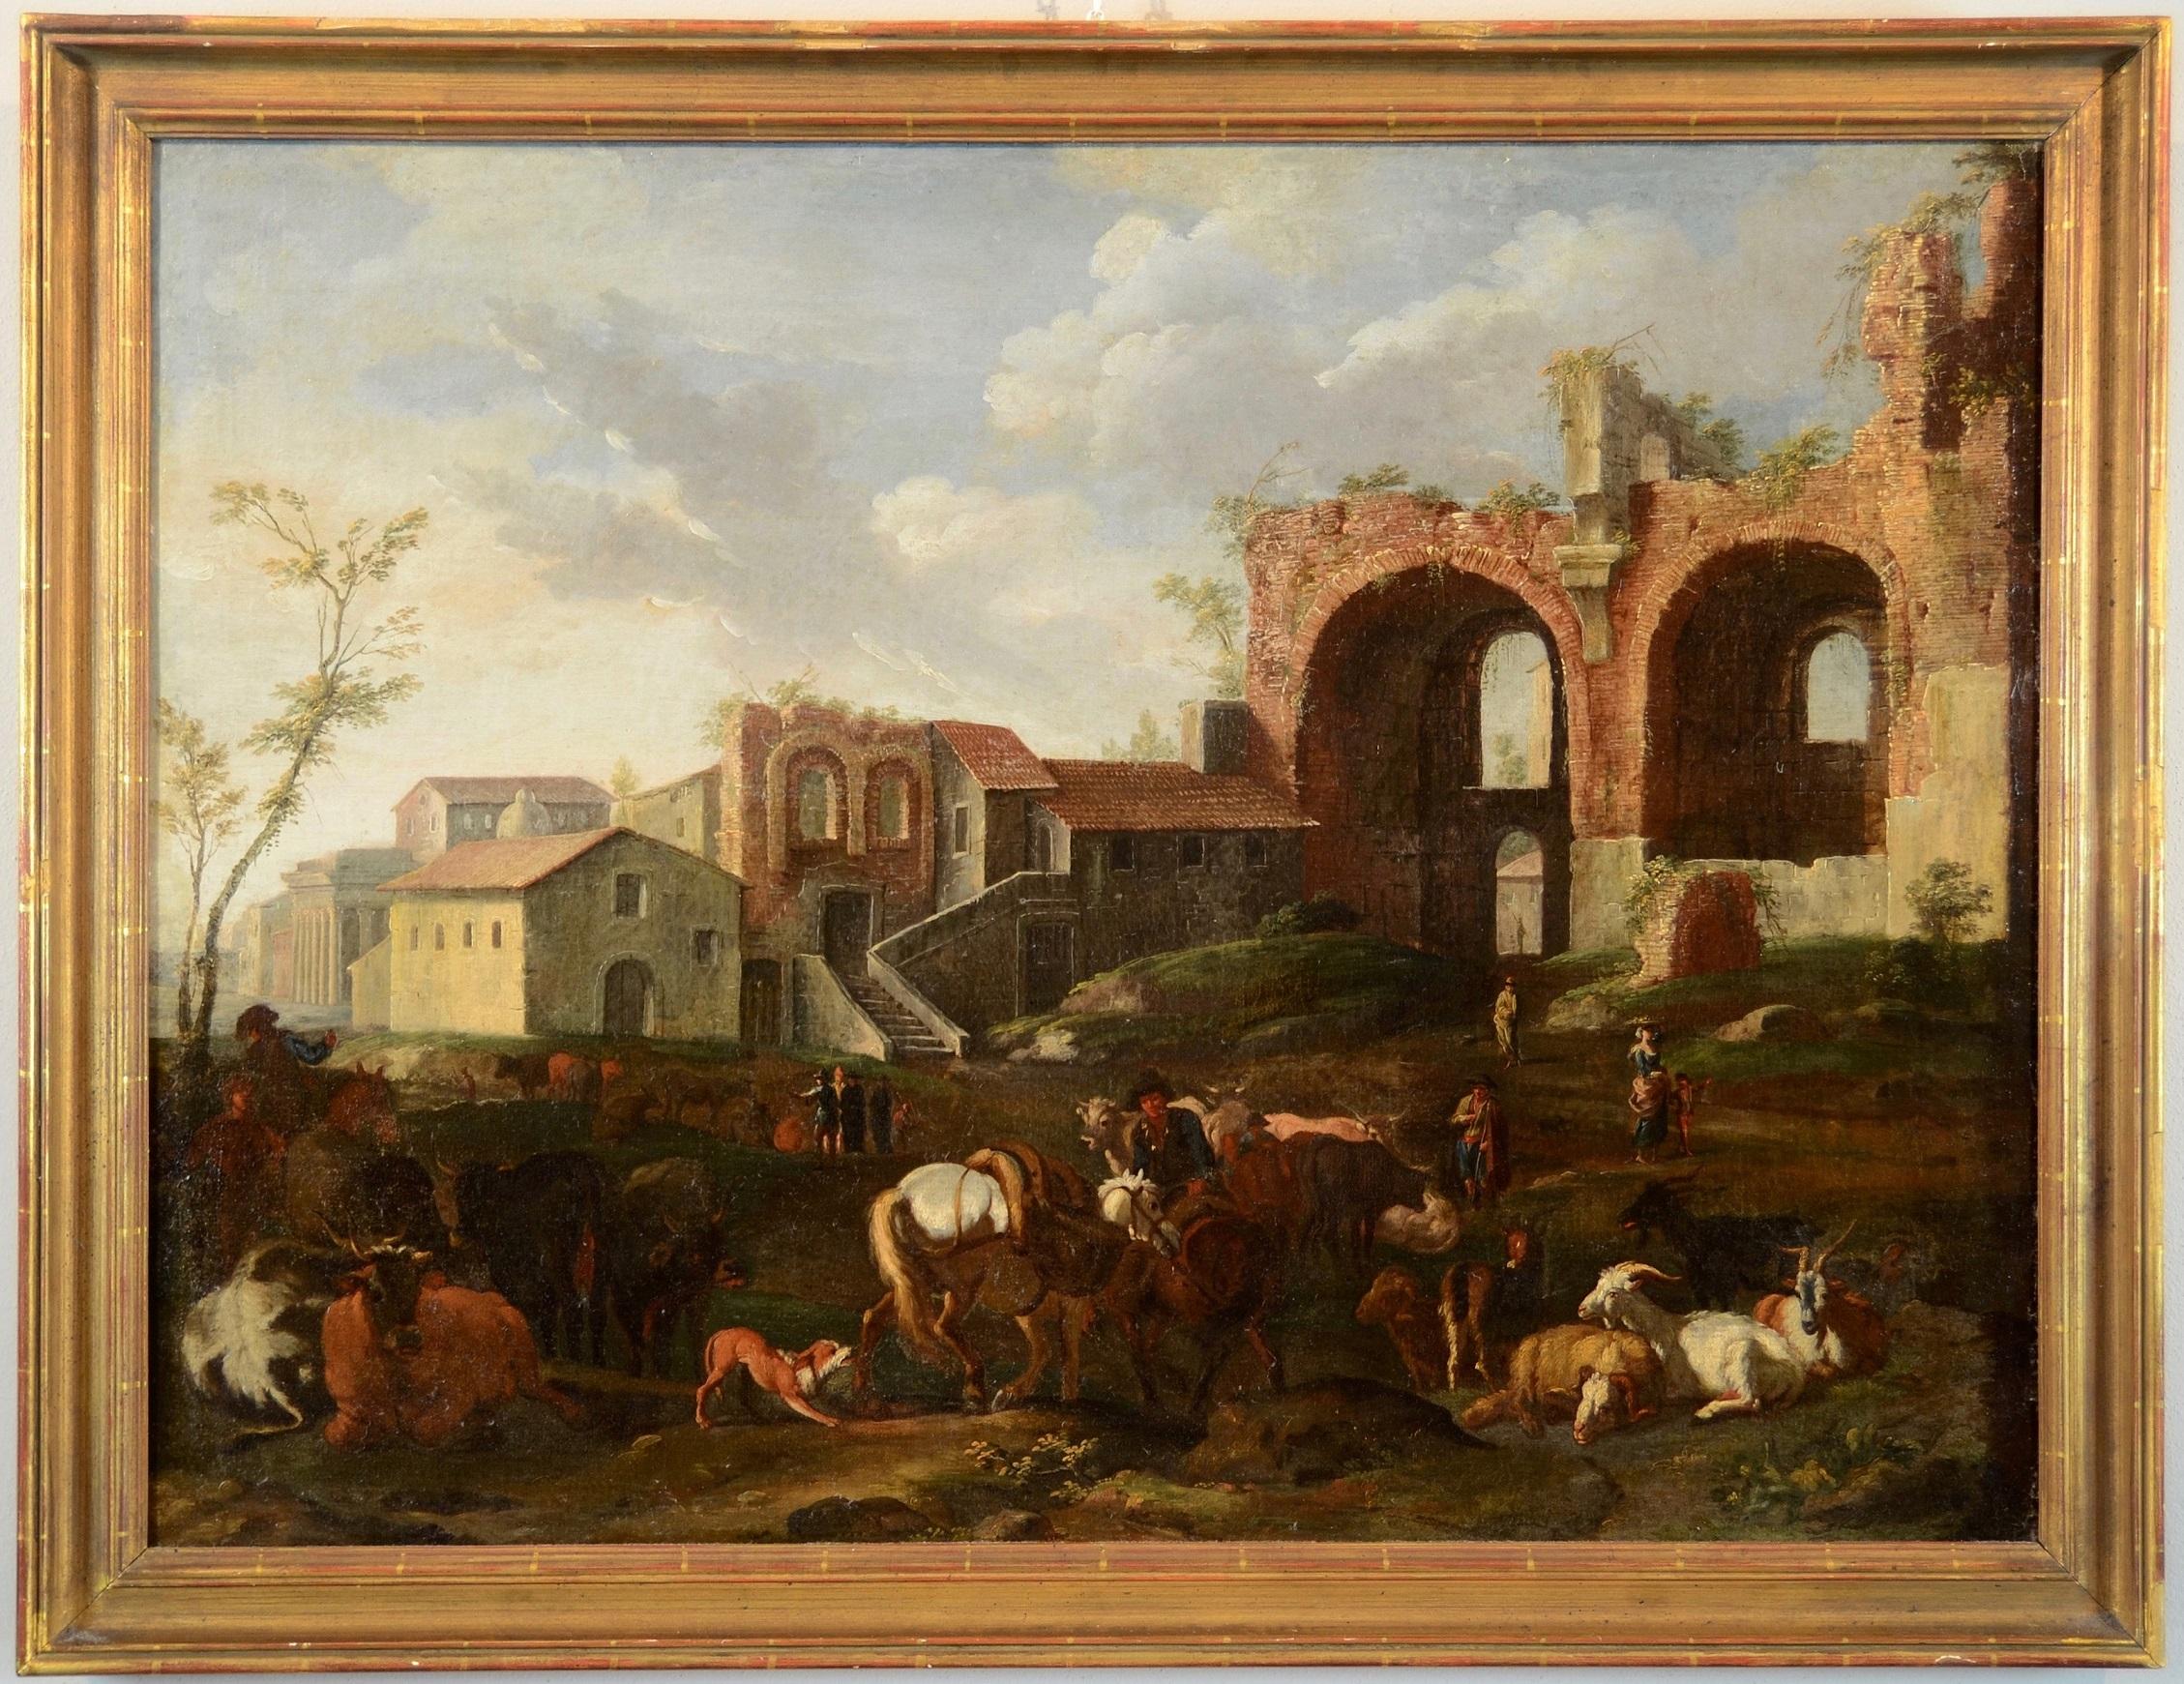 Peinture à l'huile sur toile - Paysage de Rome de Van Bloemen - 17/18e siècle - Grand maître italien - Painting de Pieter Van Bloemen (1674-1720)